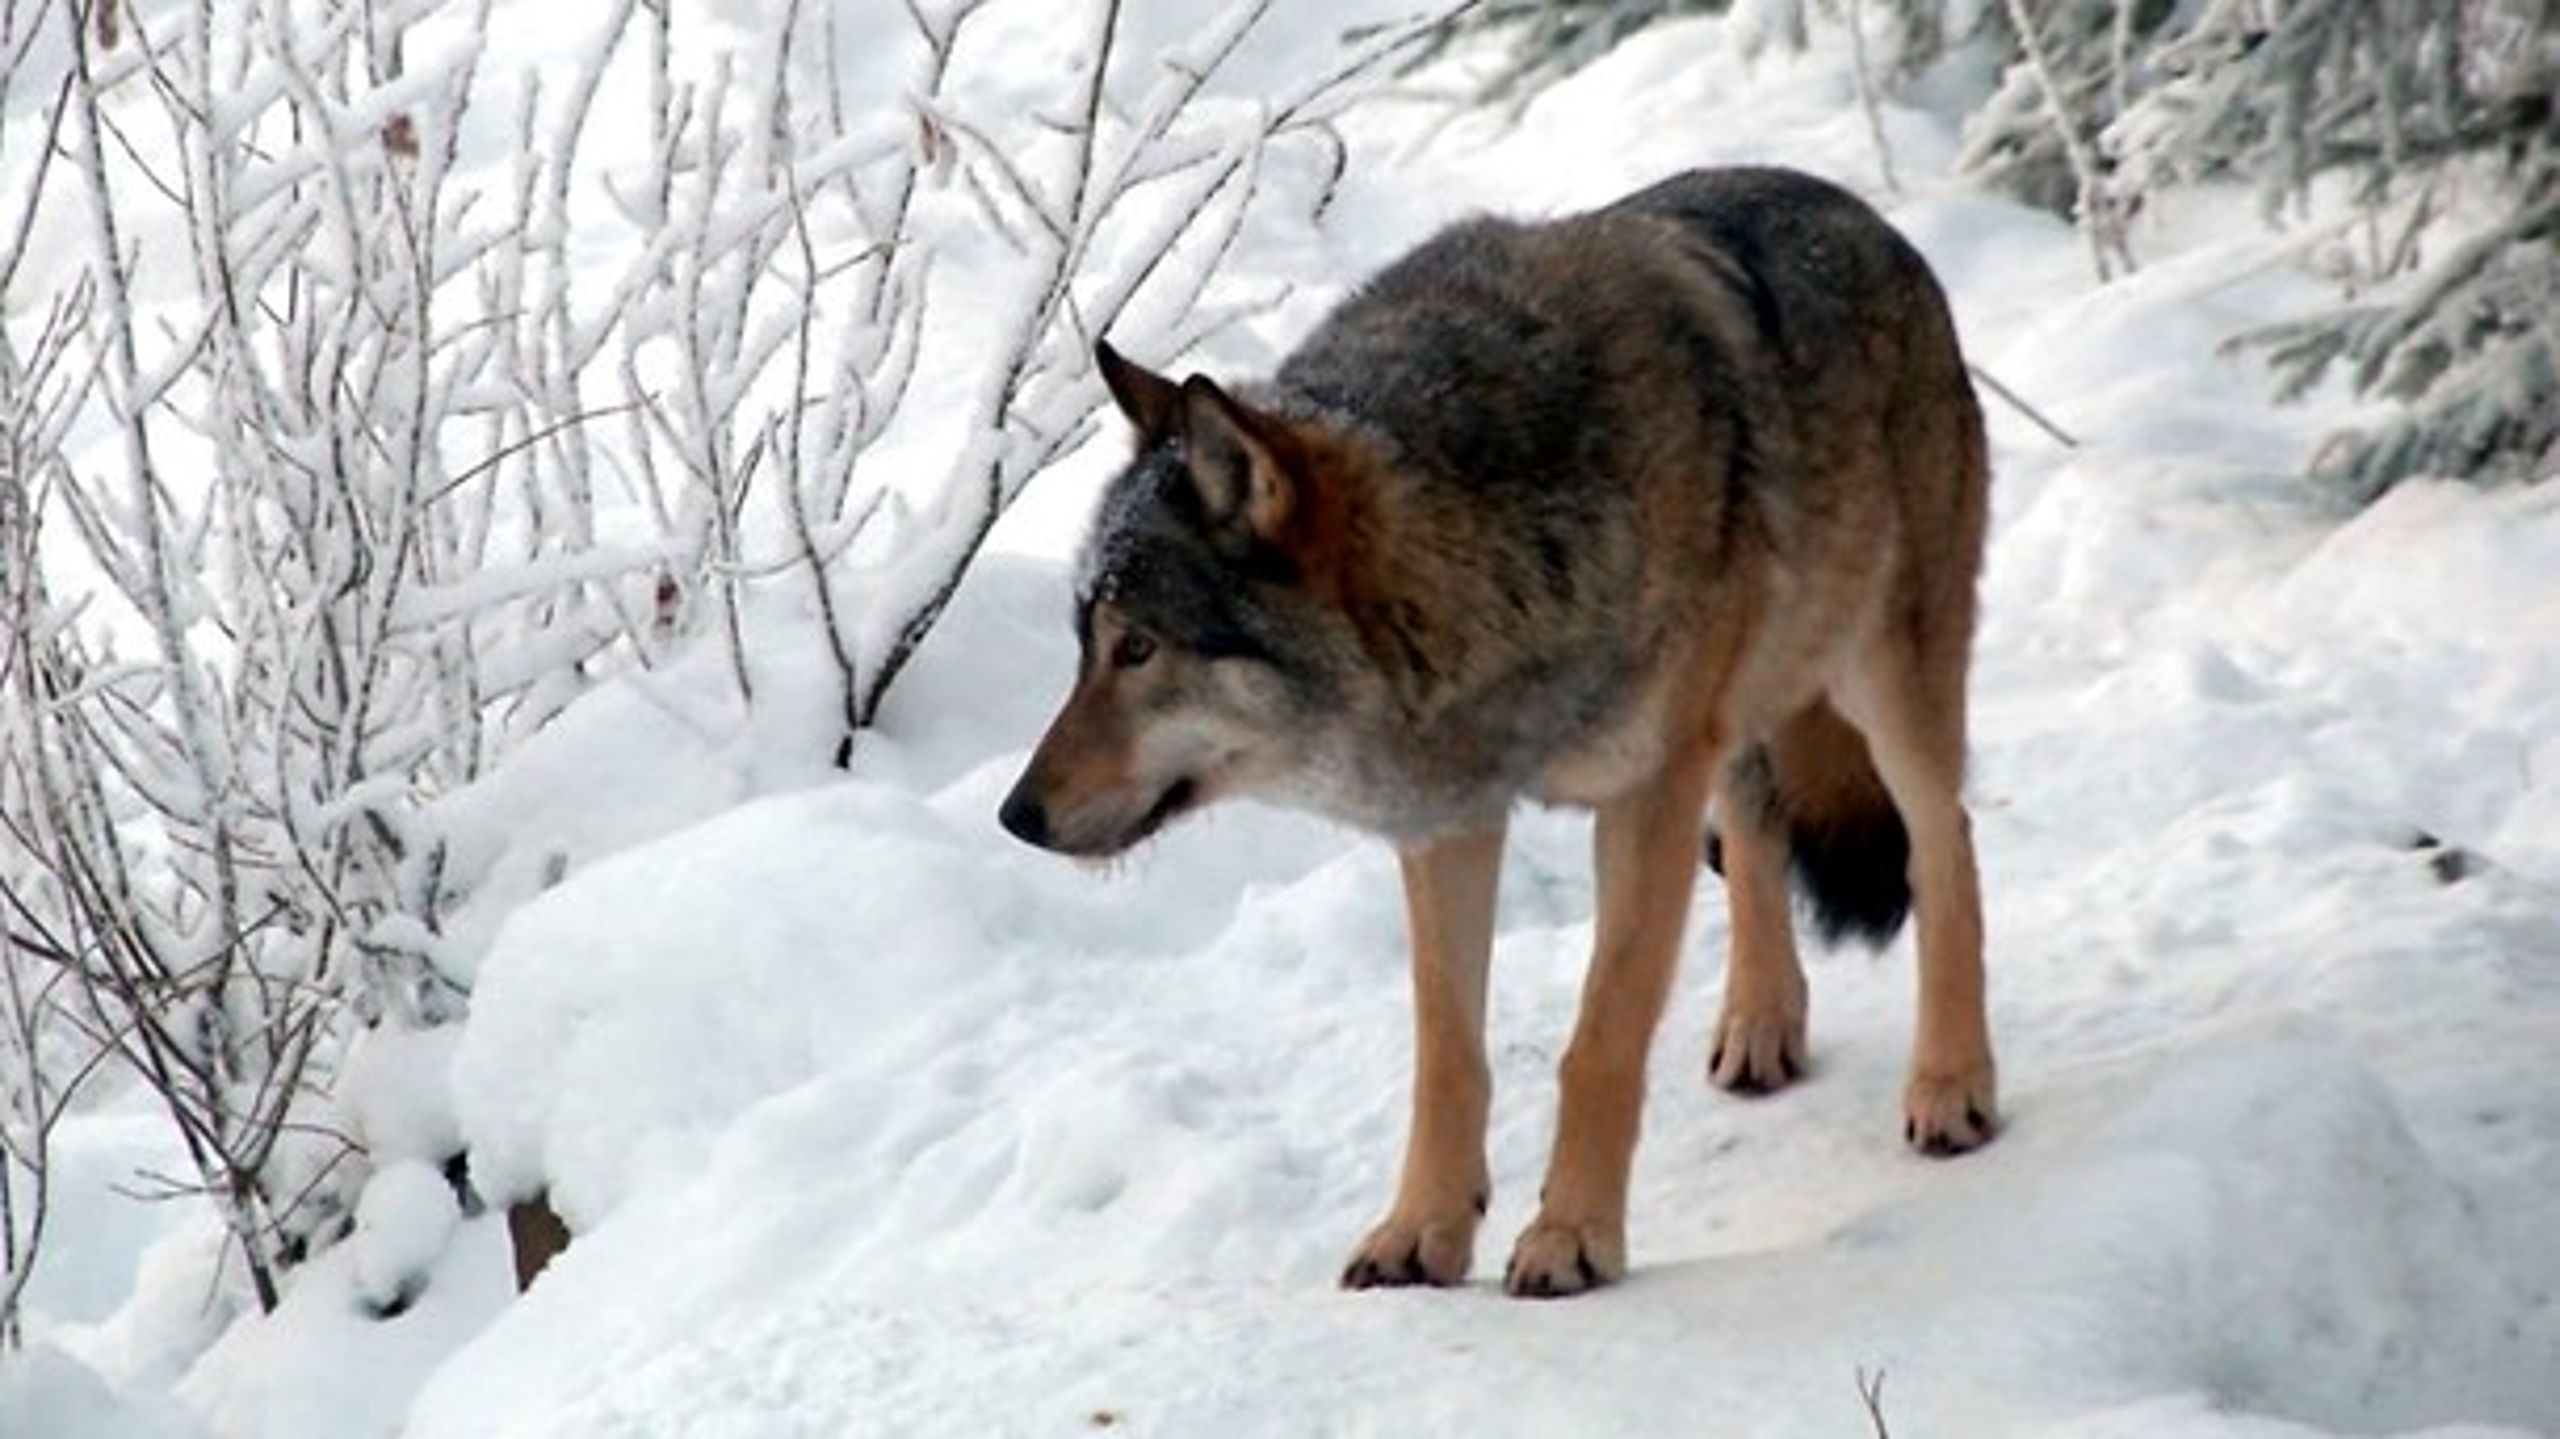 Både flere&nbsp;interesseorganisationer og politikere er ikke blege for at gå i kamp mod ulvene. Spørgsmålet er, om det handler det om at sikre husdyrene&nbsp;– eller bare om at skyde ulve?